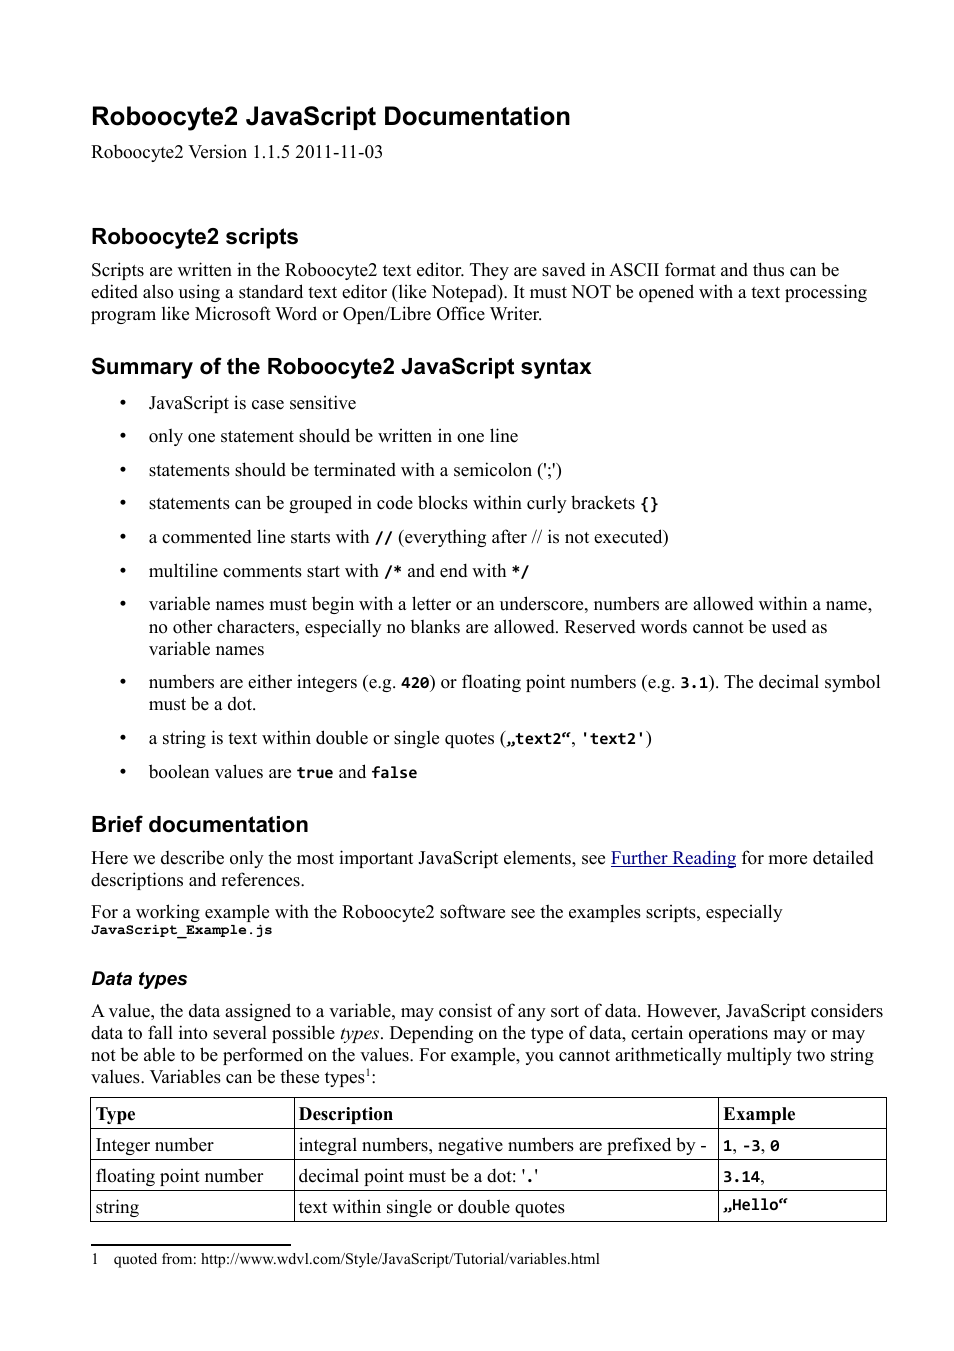 Roboocyte2 JavaScript Manual